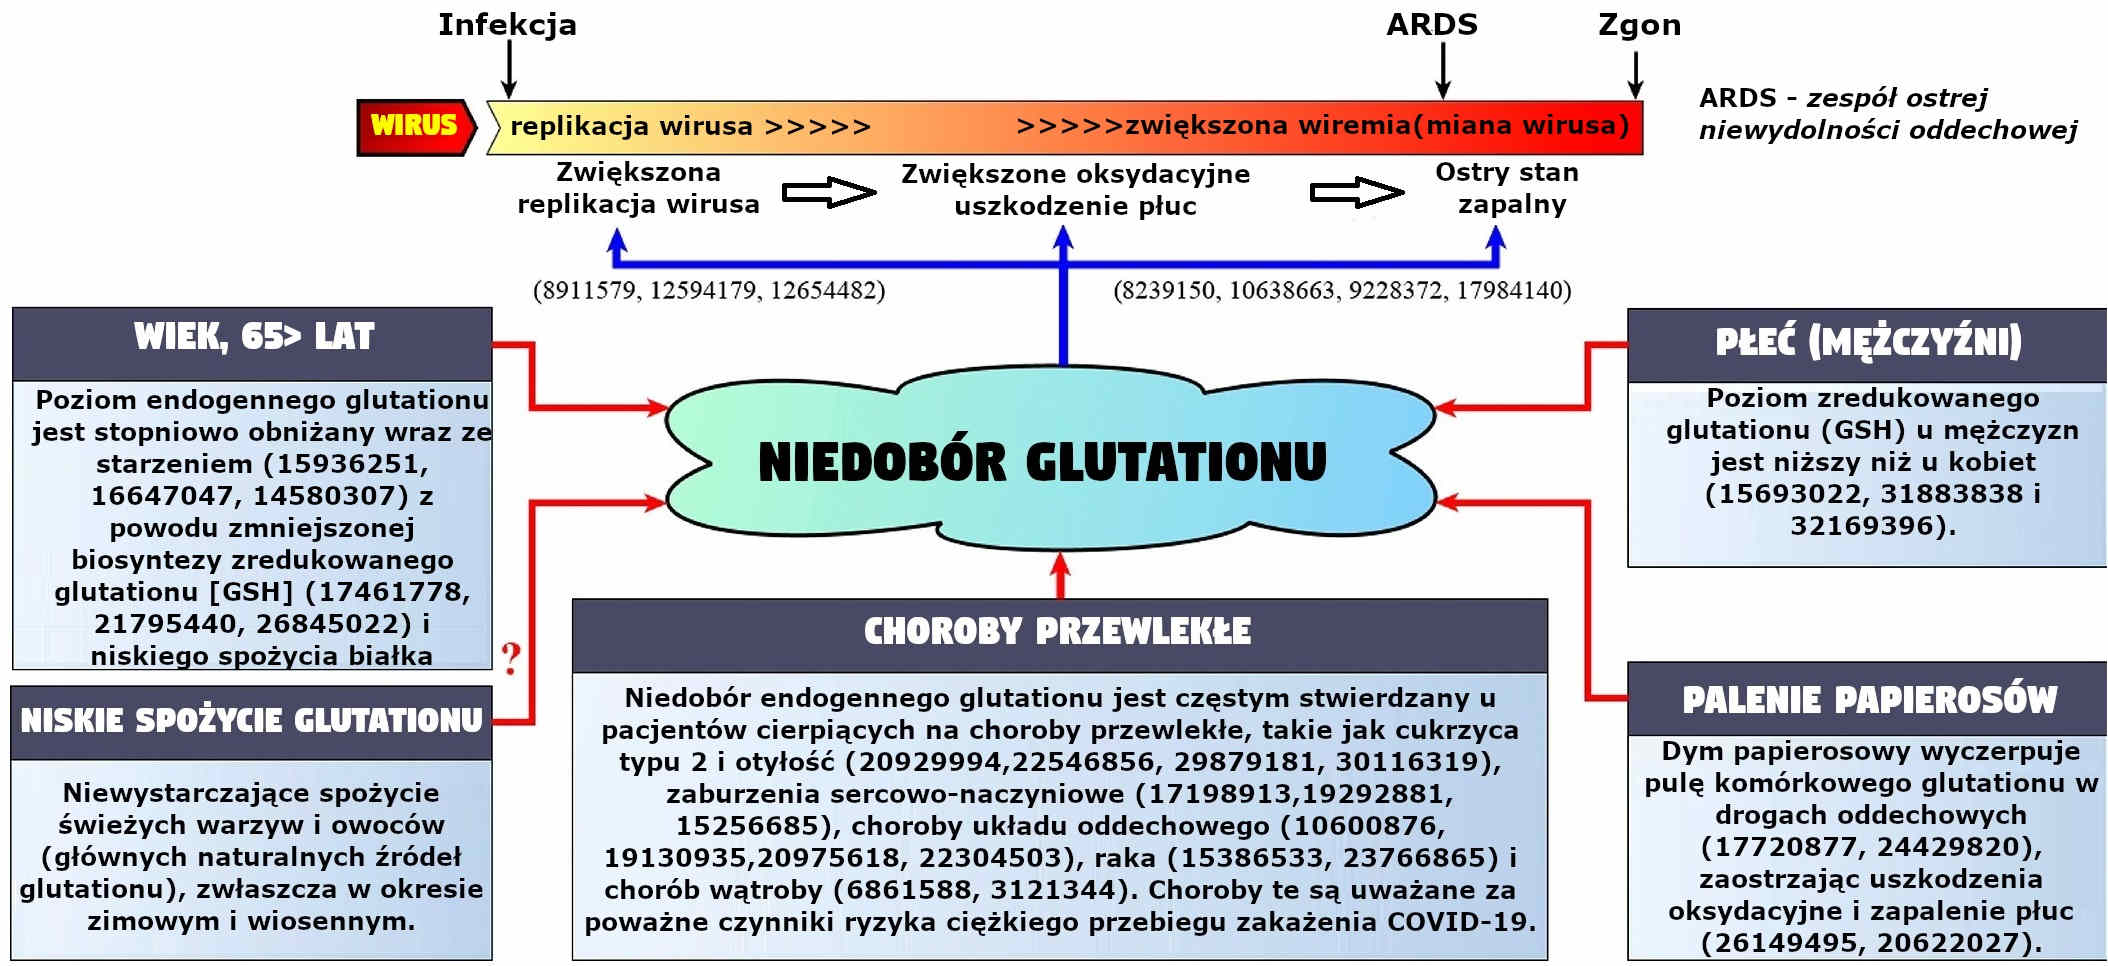 Czynniki odpowiadające za endogenny niedobór glutationu oraz mechanizmy, poprzez które ten niedobór może przyczynić się do patogenezy